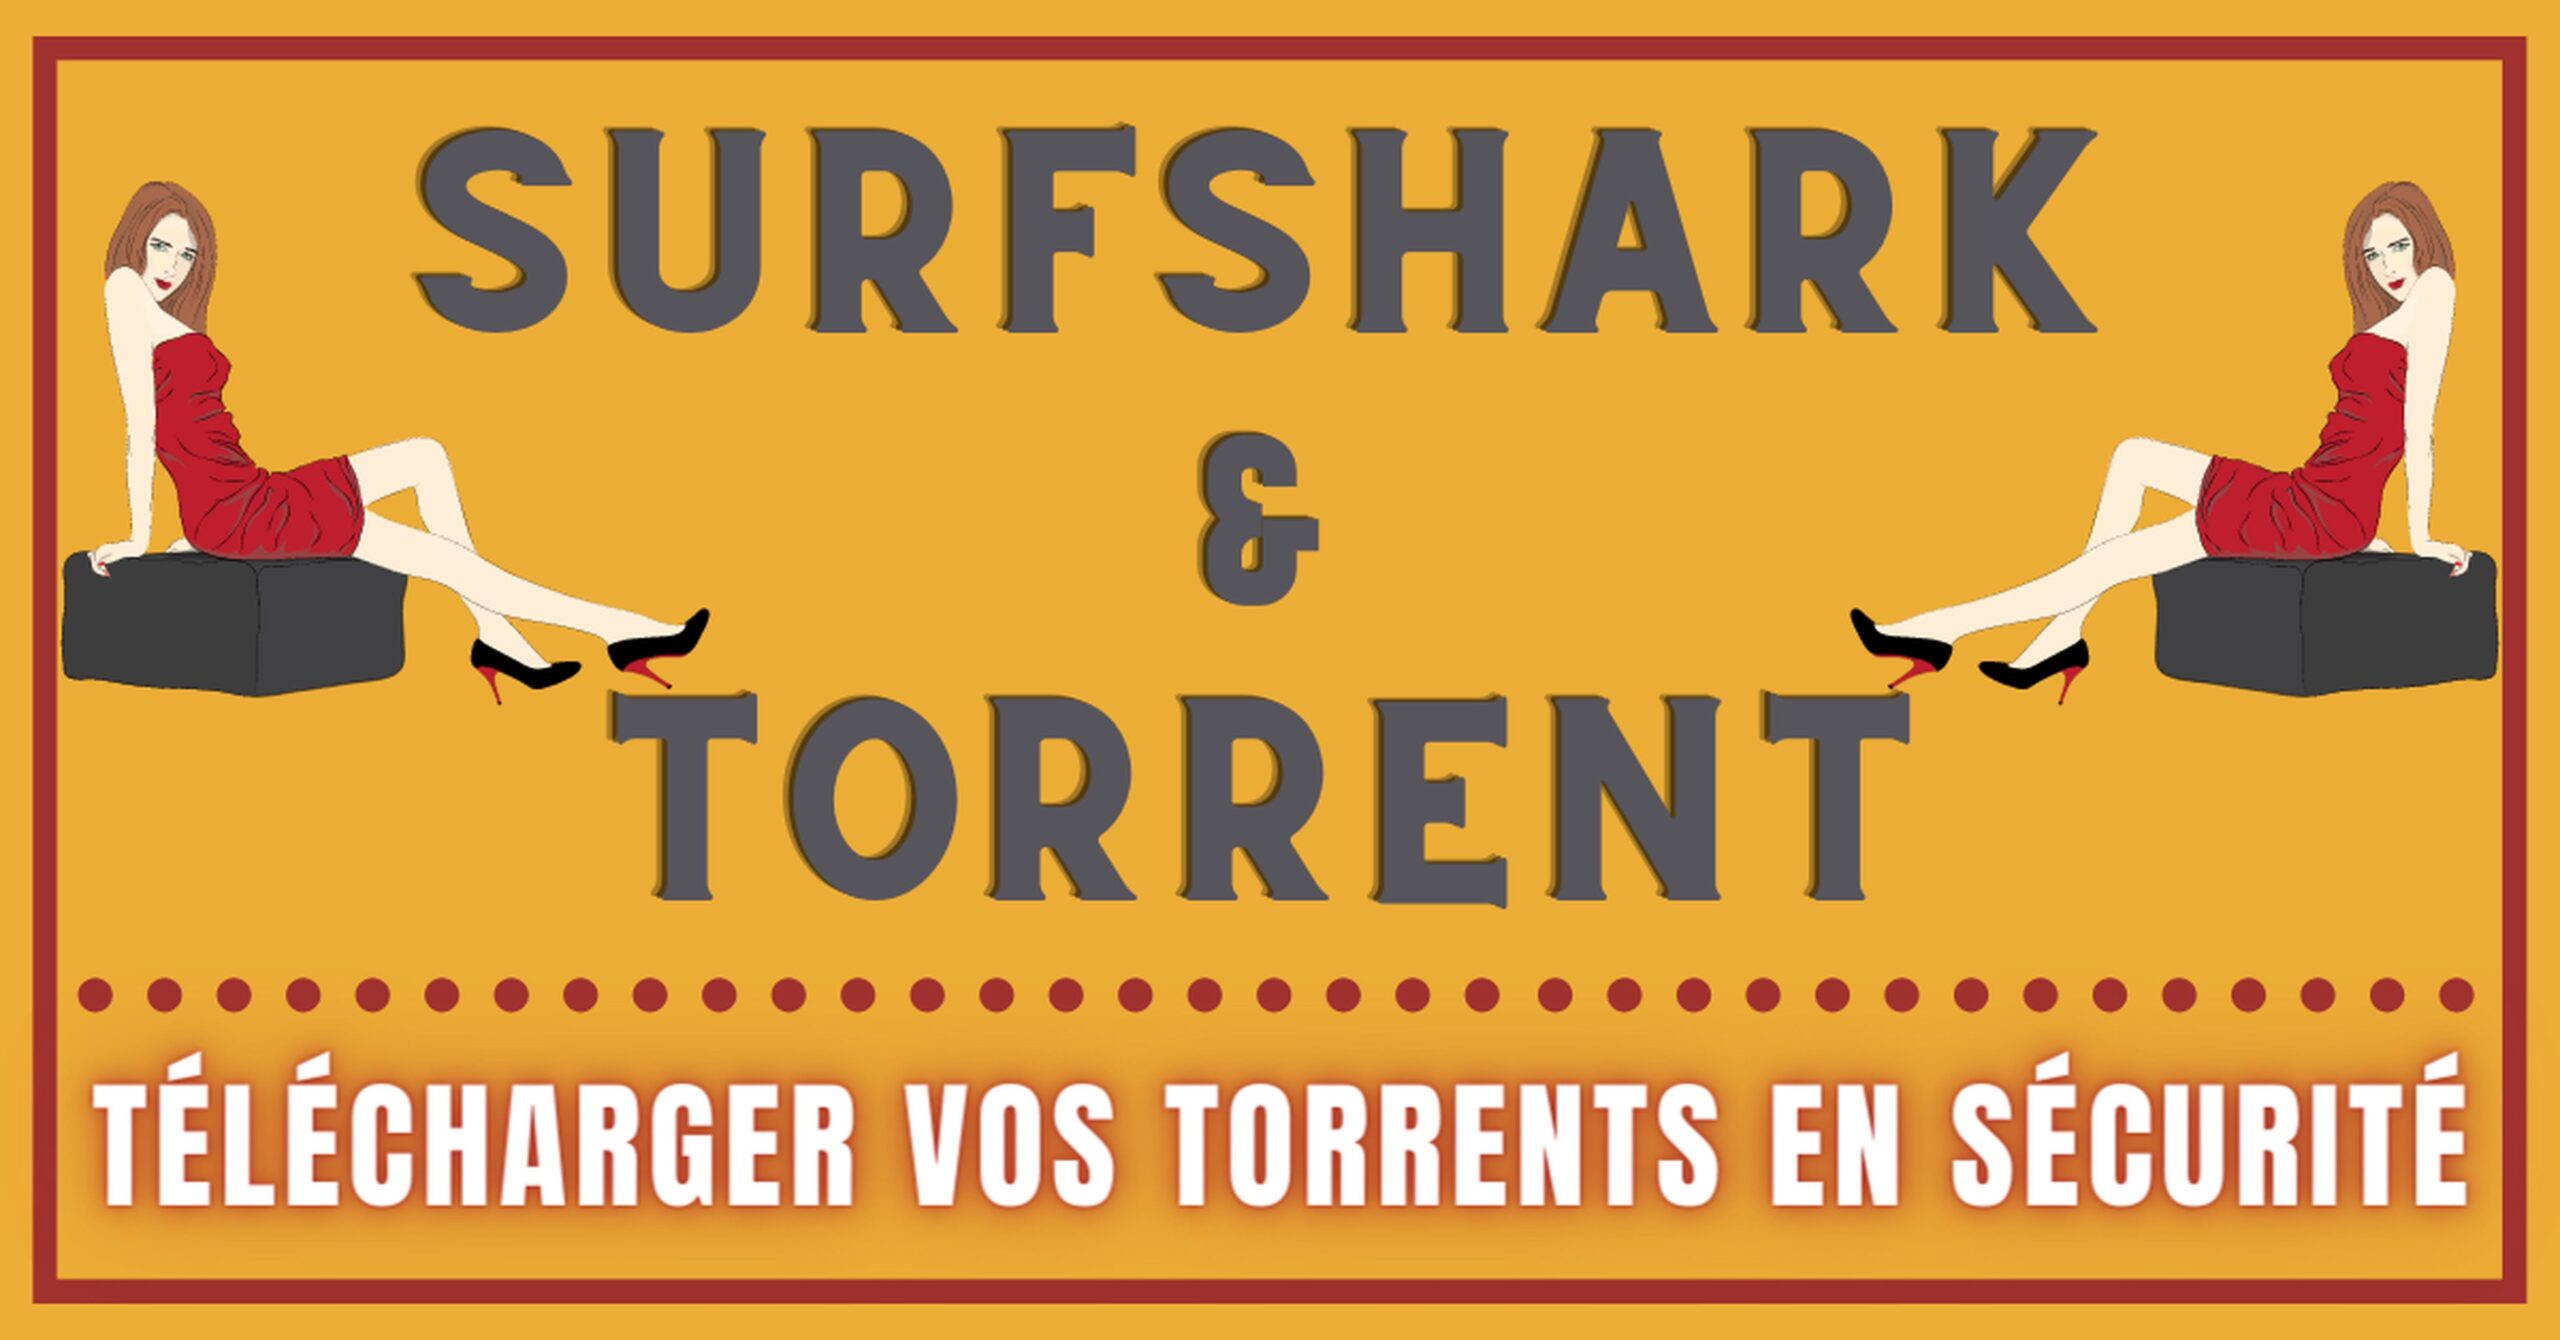 SurfShark - Peut-on télécharger des Torrents SANS RISQUE ? 9